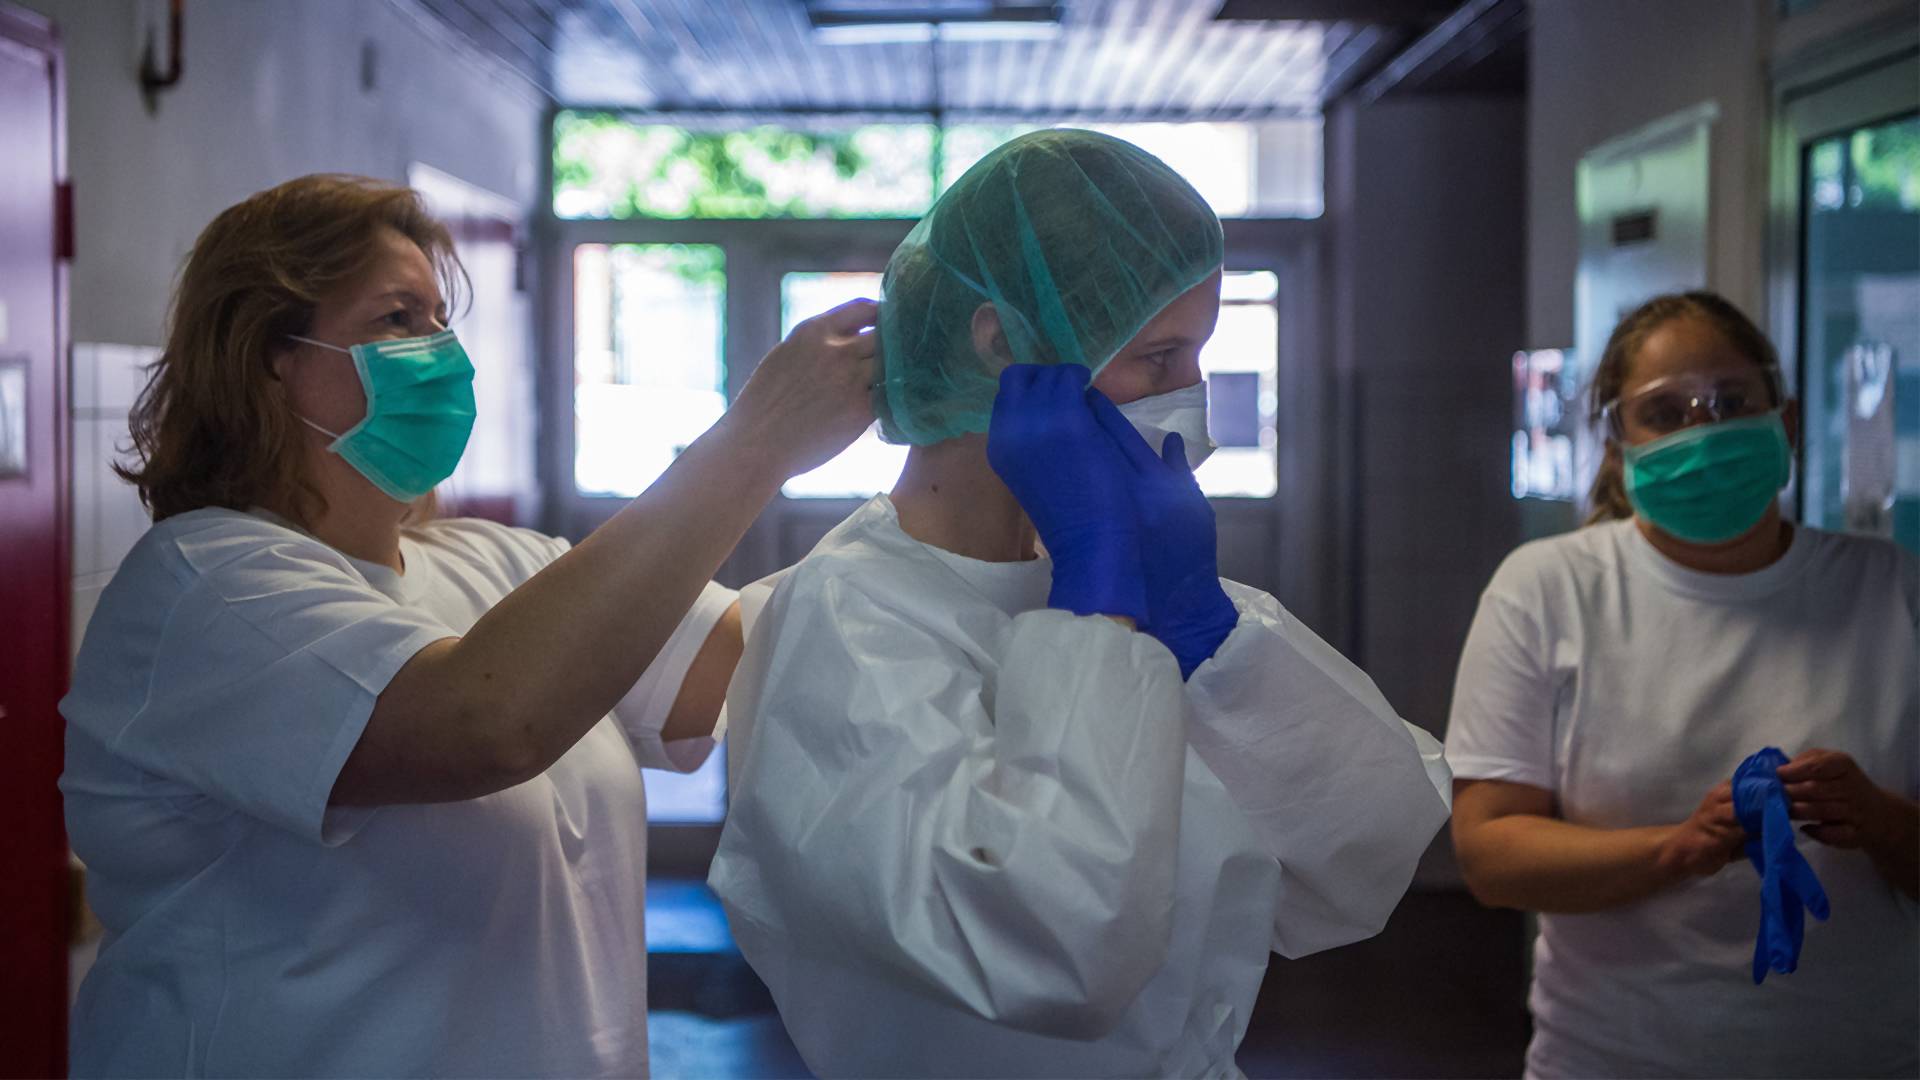 Jelentősen csökkent az egészségügyi dolgozók keresete a járvány alatt